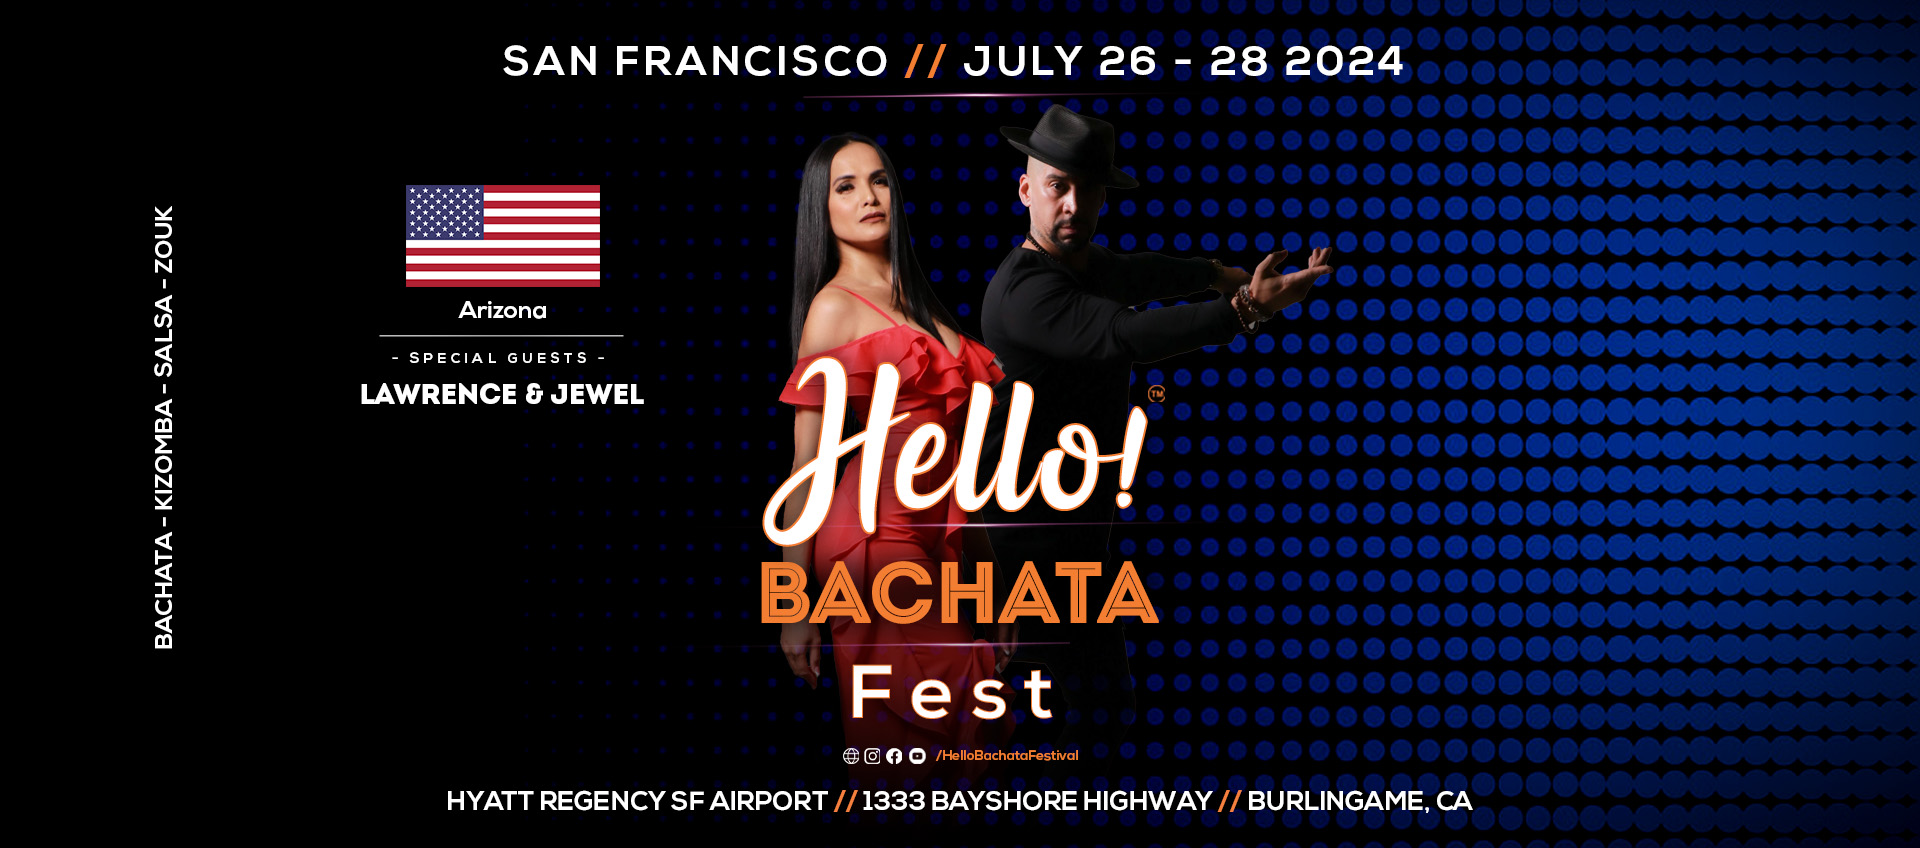 Hello Bachata Fest - Lawrence and Jewel - Salsa